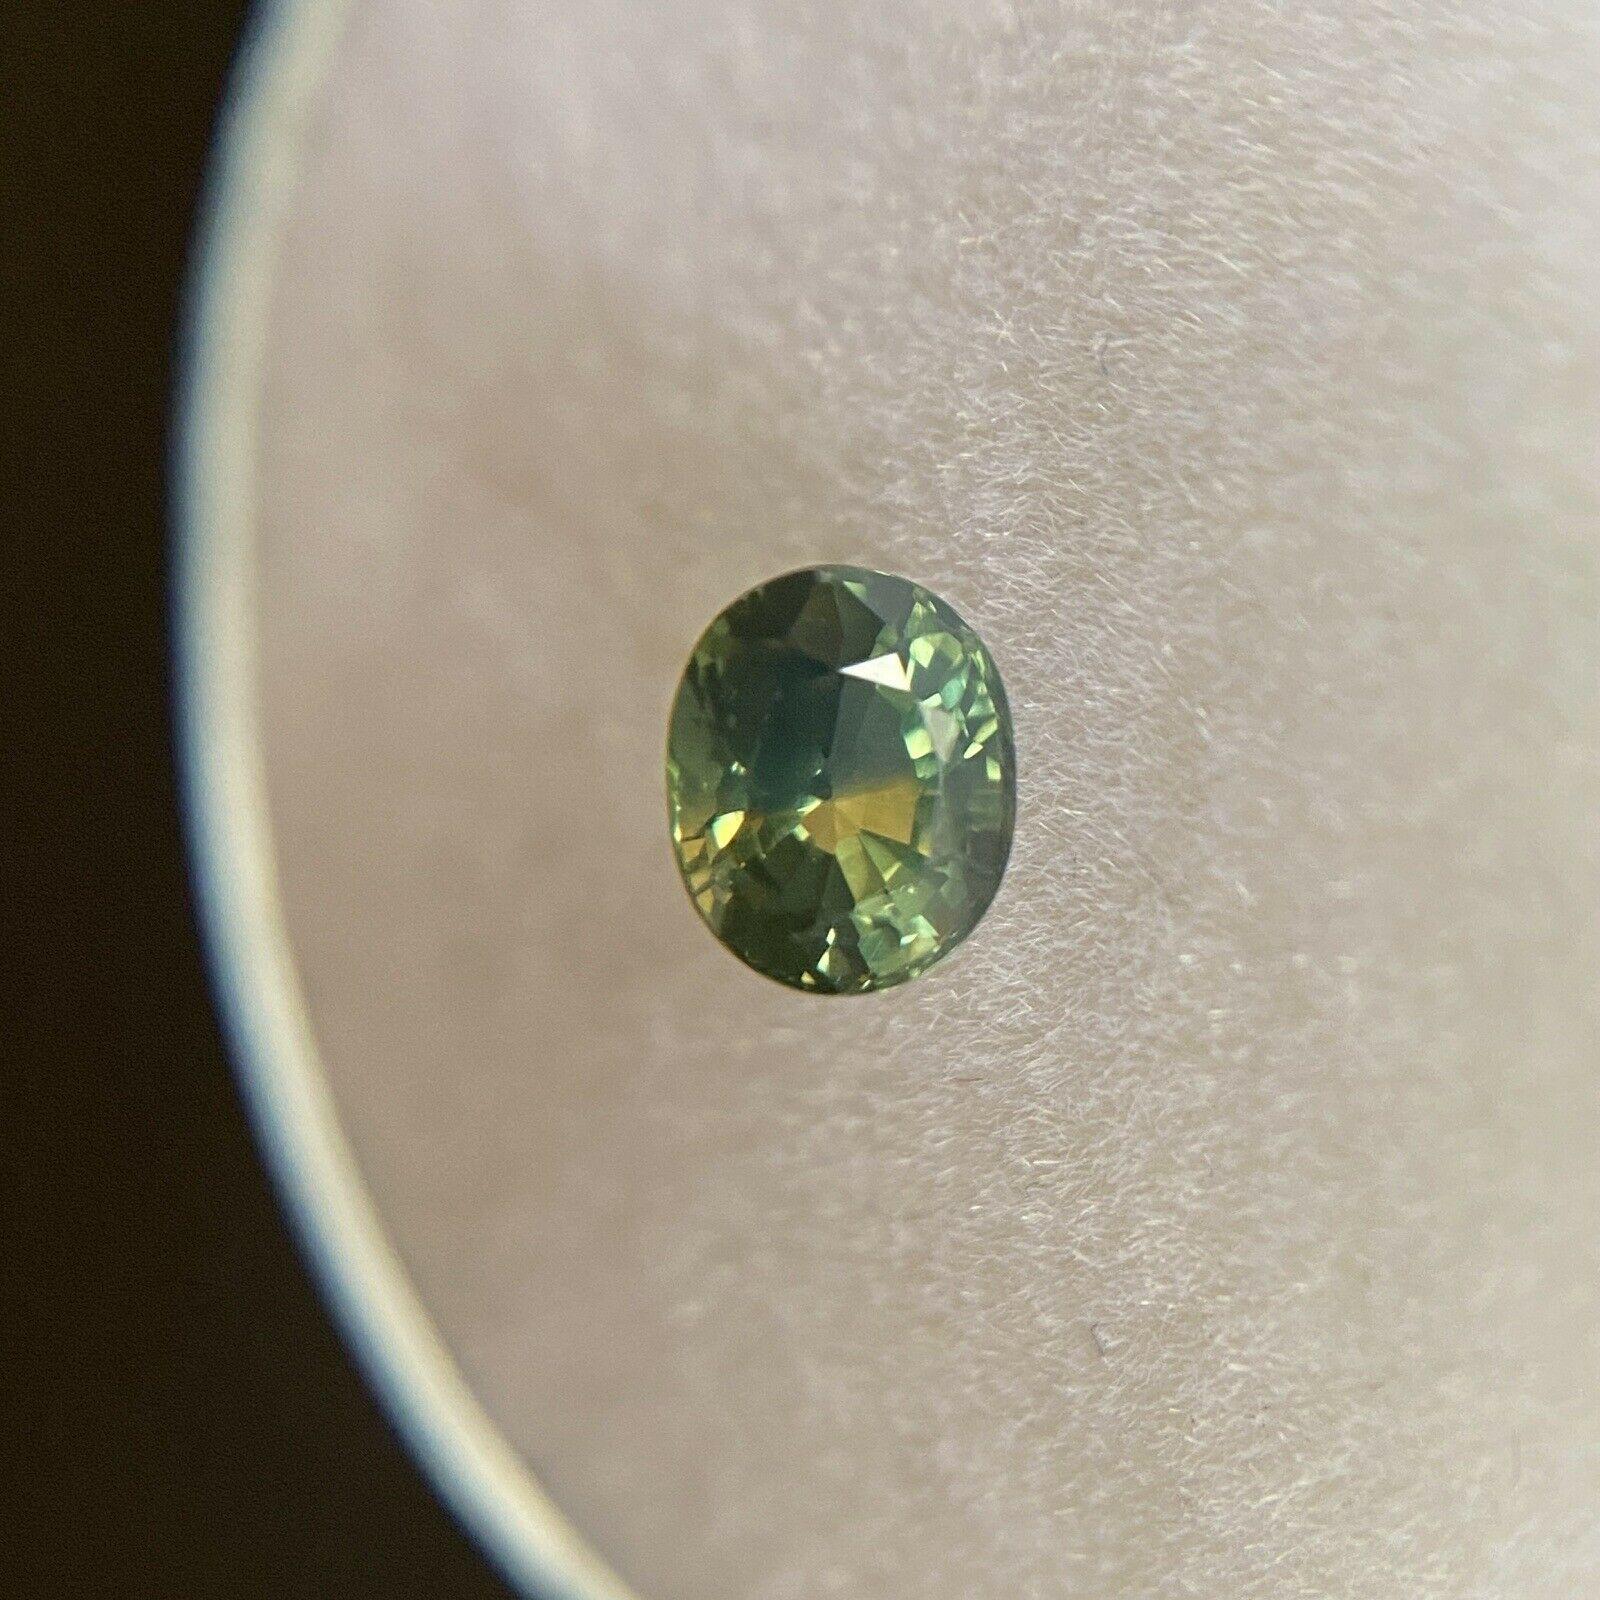 Unbehandelter Parti Farbe Australien Saphir 0.50ct Blau Grün Gelb Oval 4.8x4mm

Natürlicher unbehandelter grünlich-gelb-blauer Parti-Colour/Bi-Colour australischer Saphir Edelstein. 
0.48 Karat mit einer schönen und einzigartigen